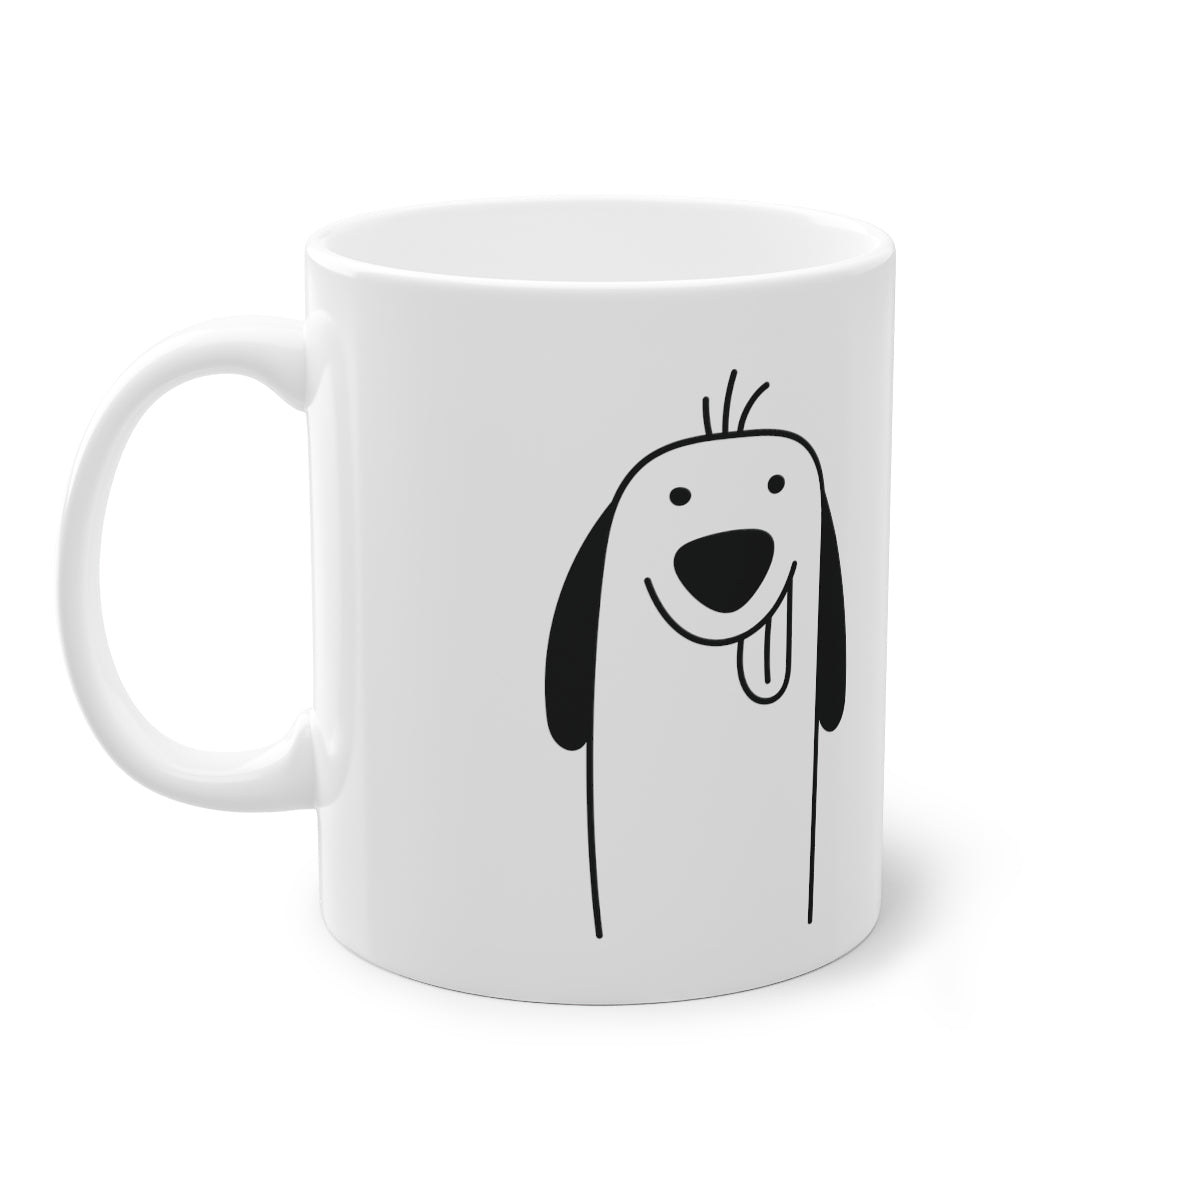 Mug mignon chien Spaniel, blanc, 325 ml / 11 oz Tasse à café, tasse à thé pour les enfants, les enfants, les chiots mug pour les amoureux des chiens, les propriétaires de chiens